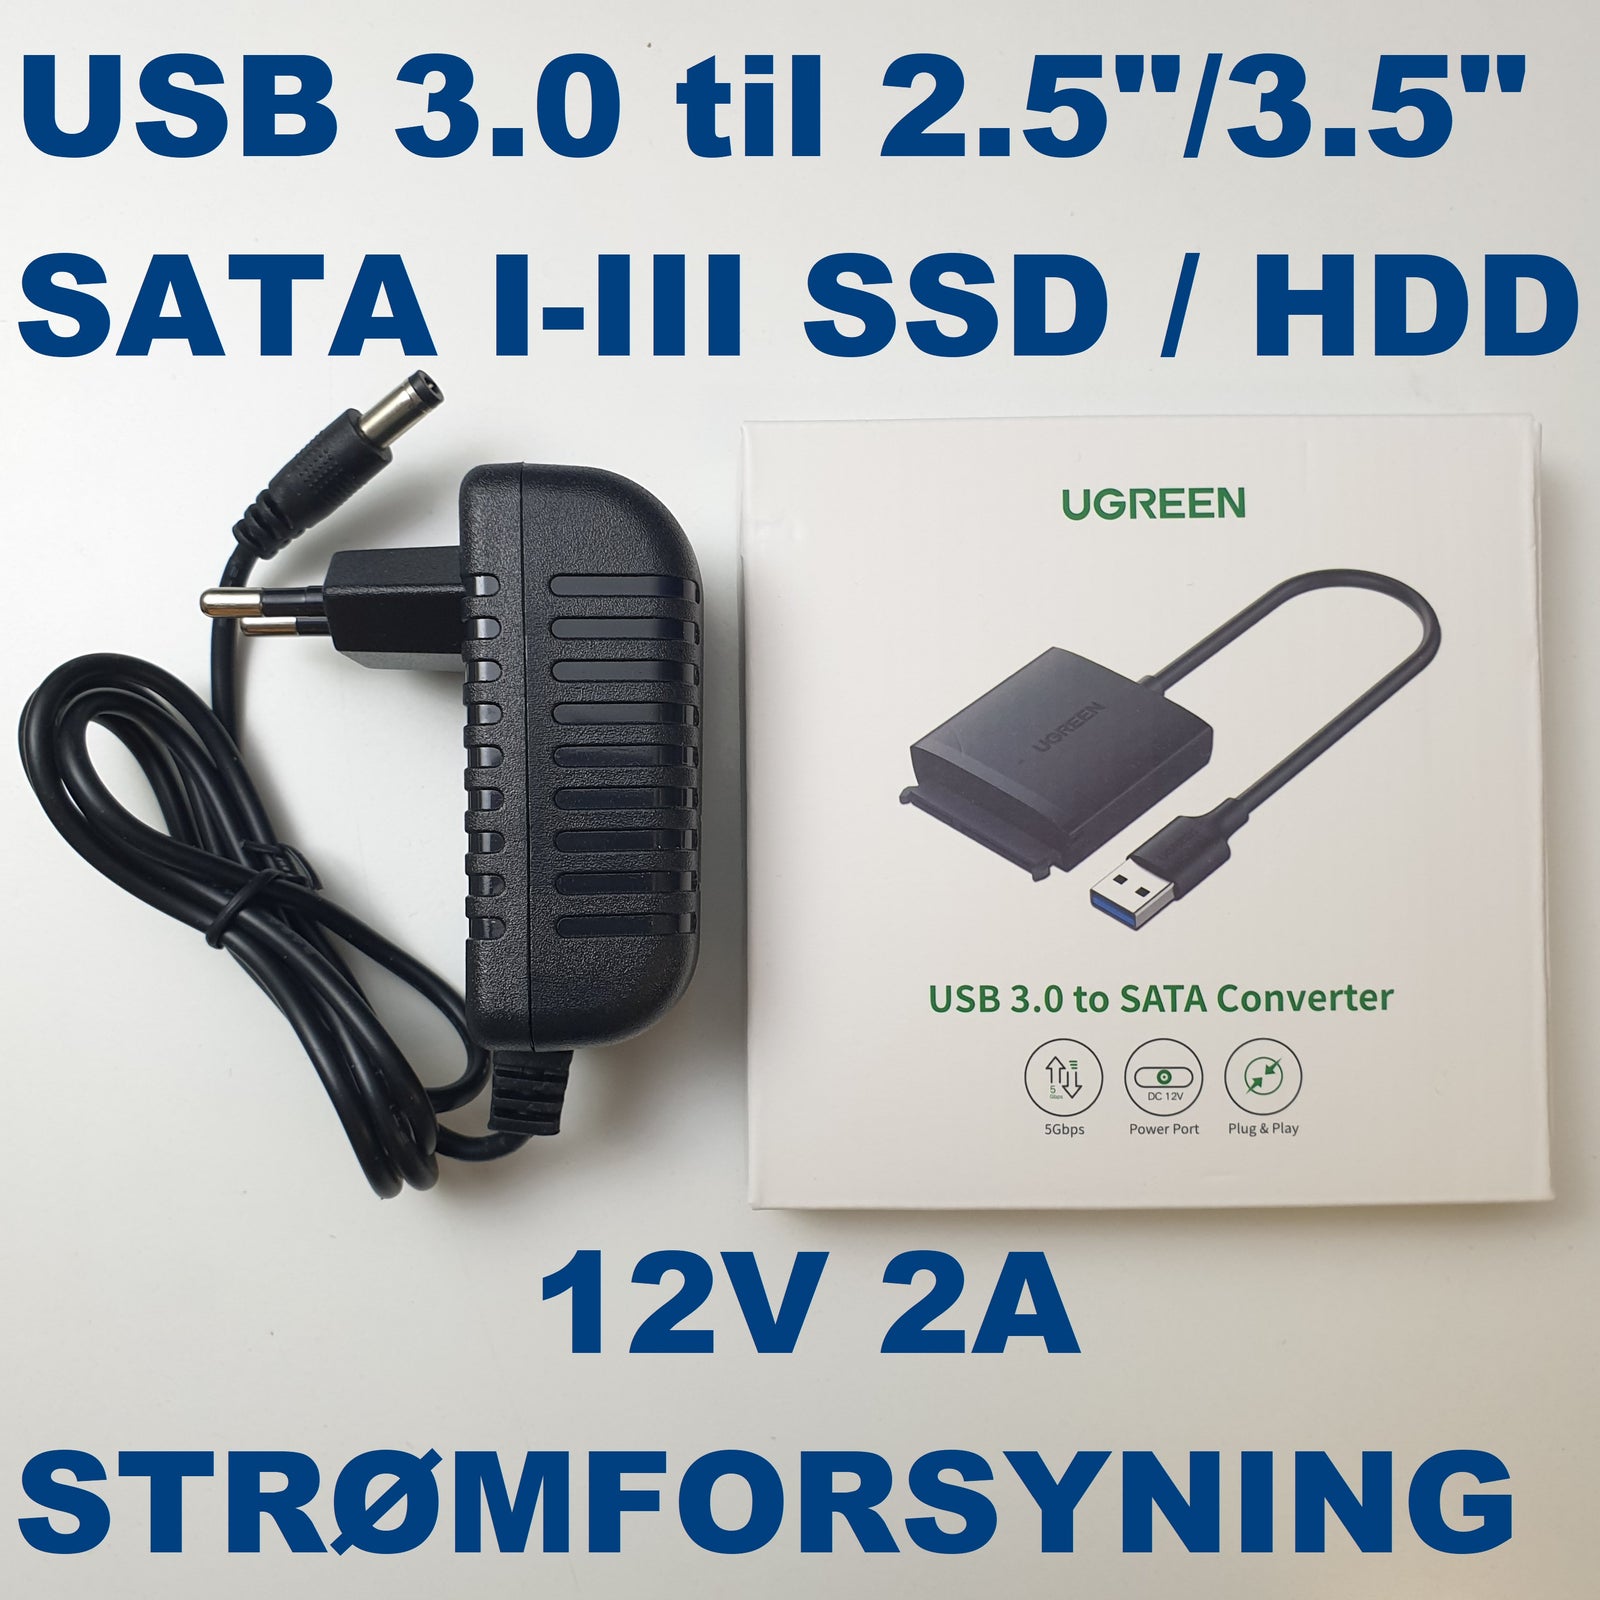 sprogfærdighed Jabeth Wilson ufravigelige Adapter, USB 3.0 til SATA 2.5" & 3.5" - dba.dk - Køb og Salg af Nyt og Brugt